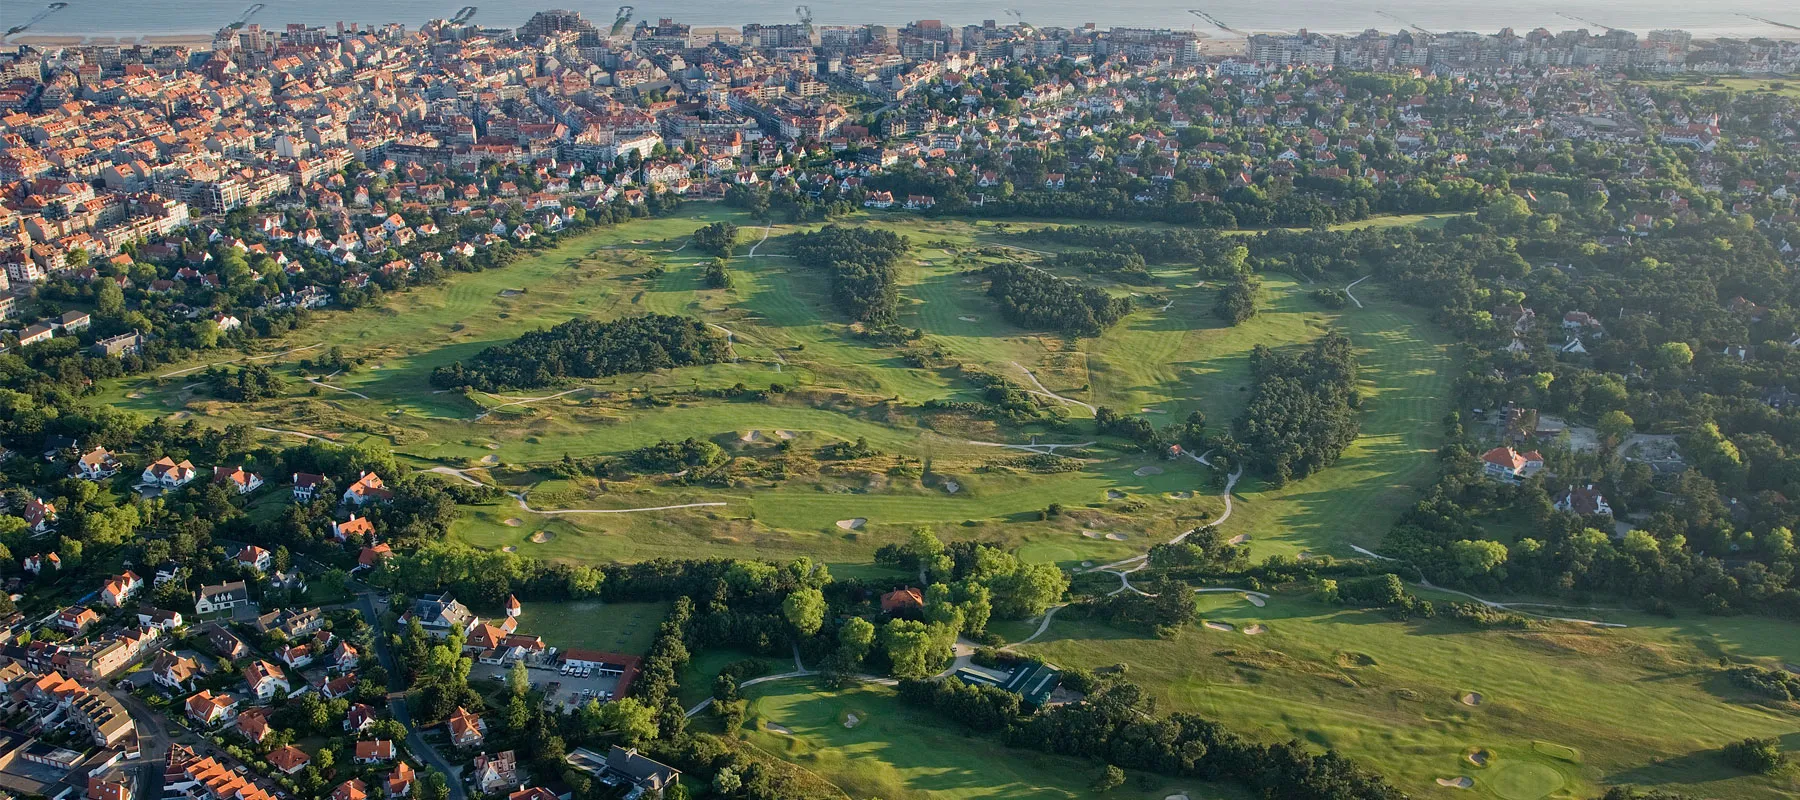 Knokke-Heist Golf per helikopter